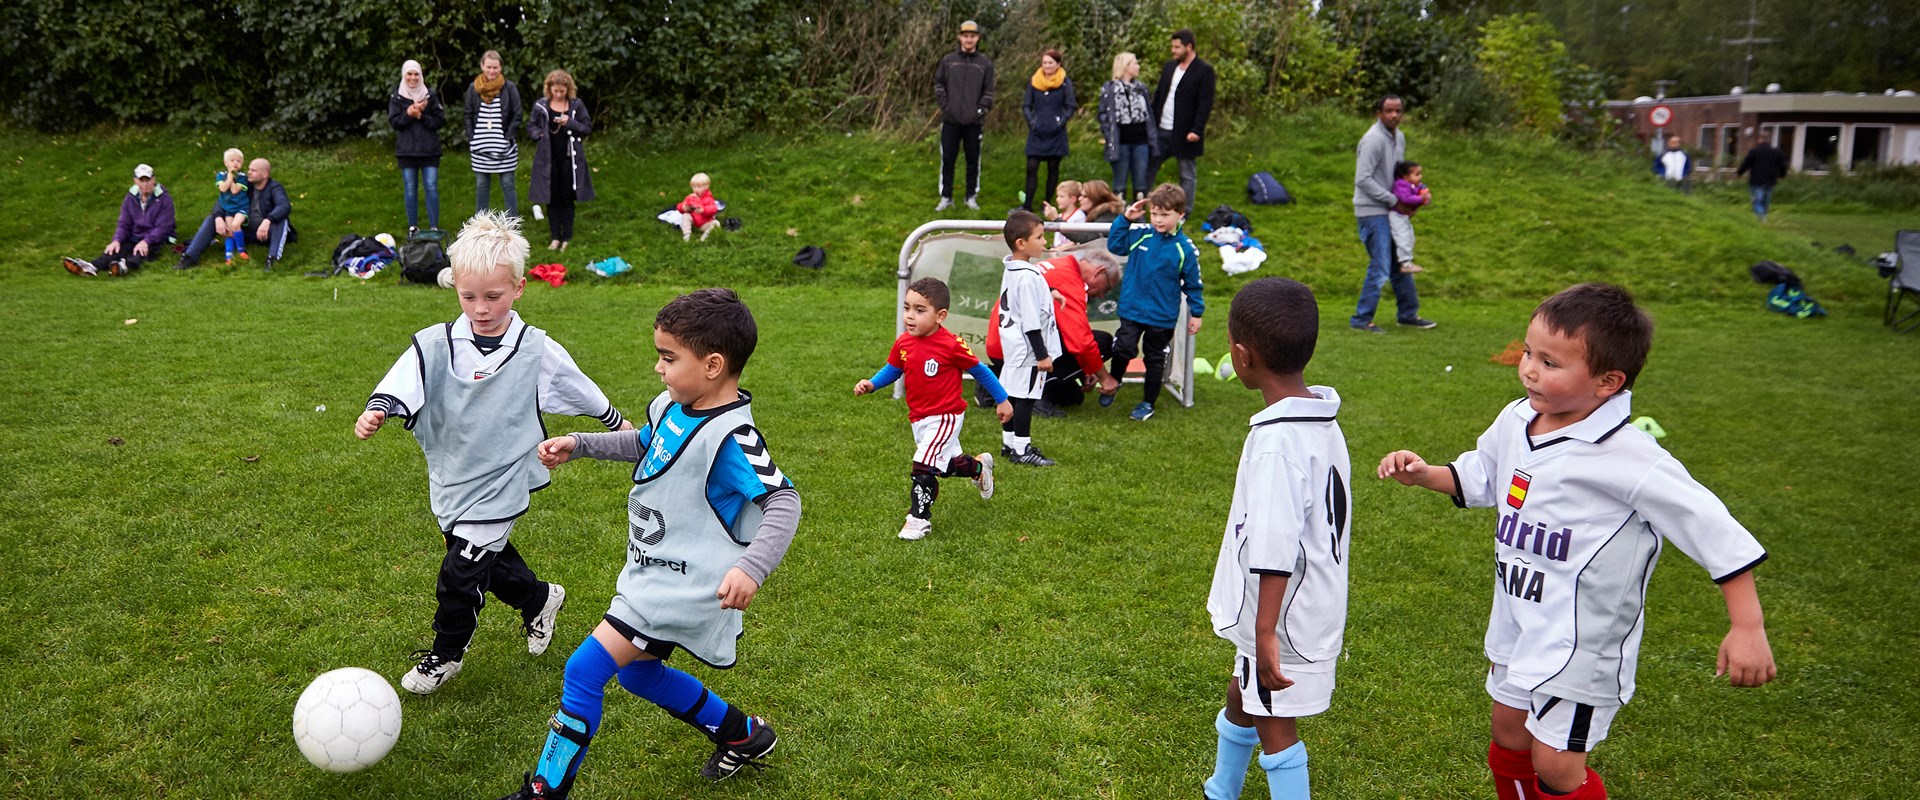 DBU Jylland søger playmakere til børnefodbold